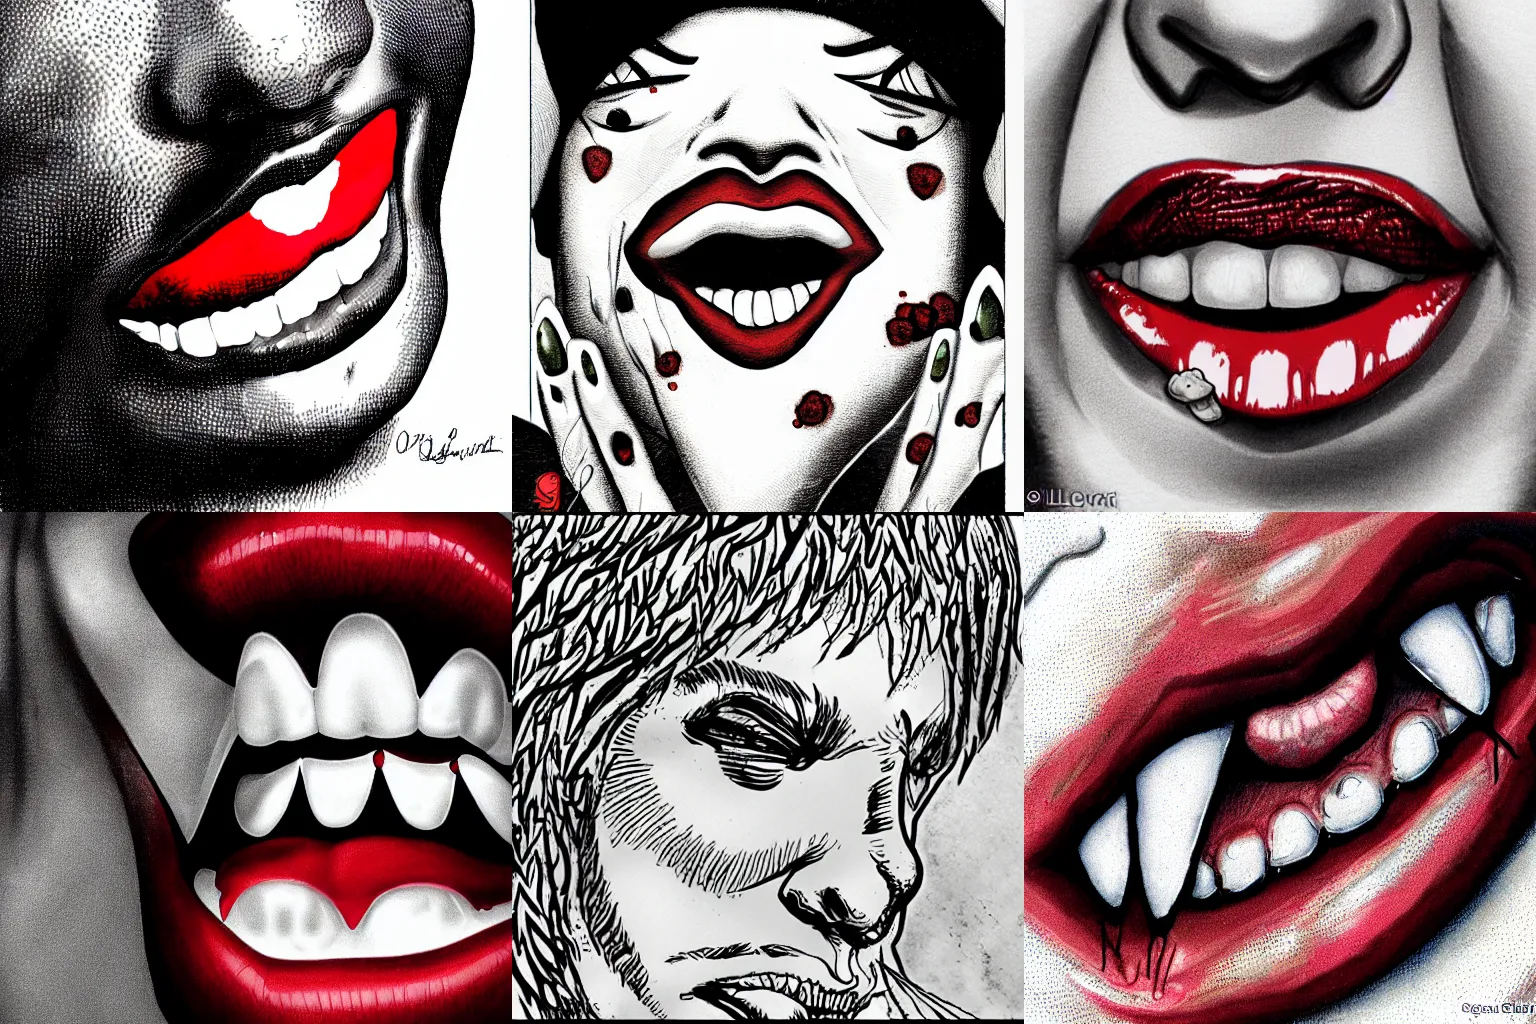 Prompt: Une fée sanguinaire, la bouche couverte de sang, avec des dents pointues, close-up, dessinée par Olivier Ledroit